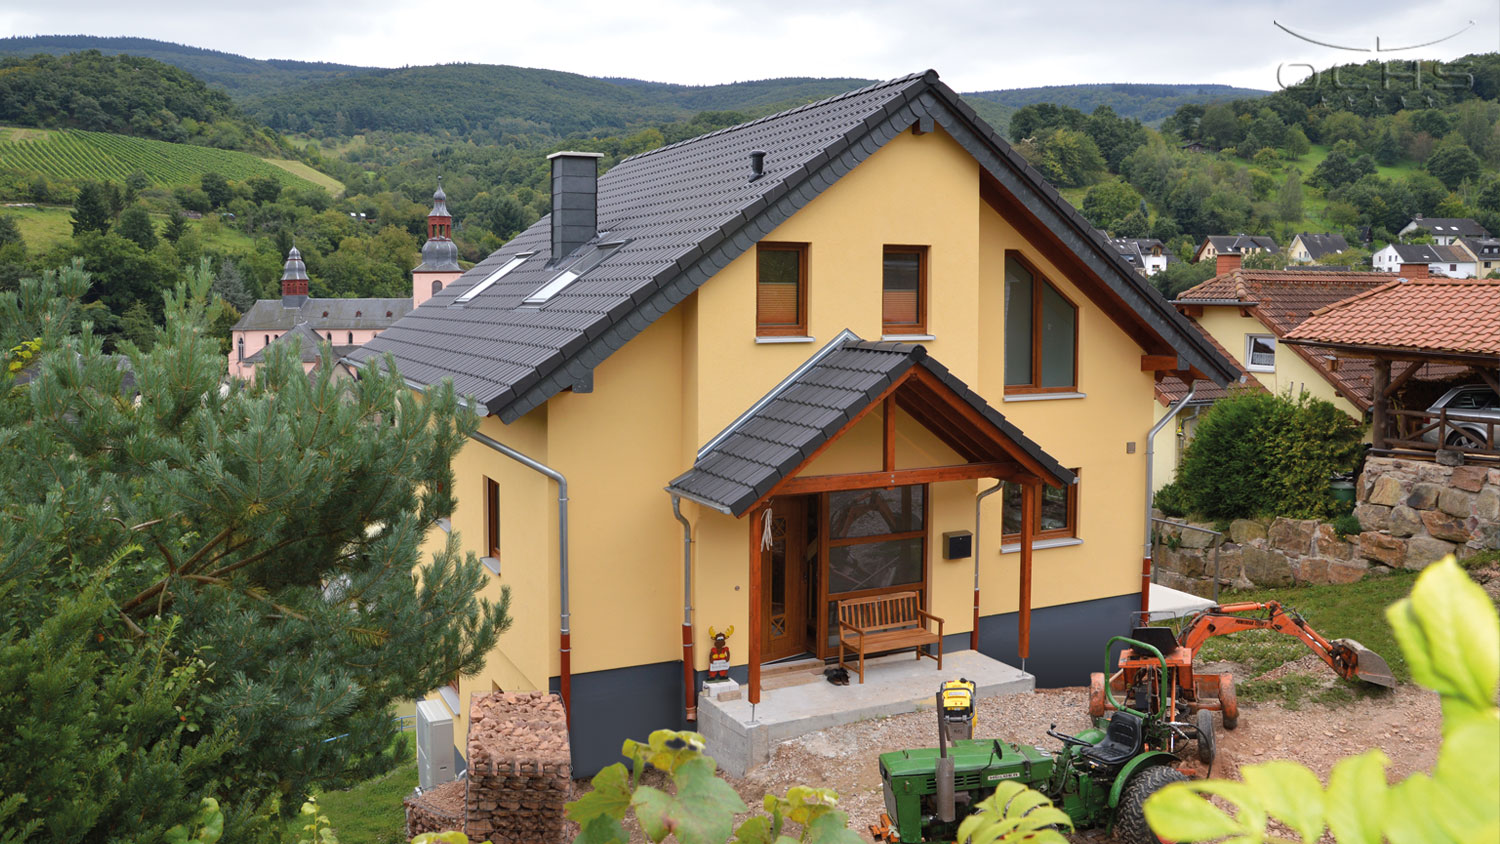 Wohnhaus in Holzbauweise in Oberheimbach